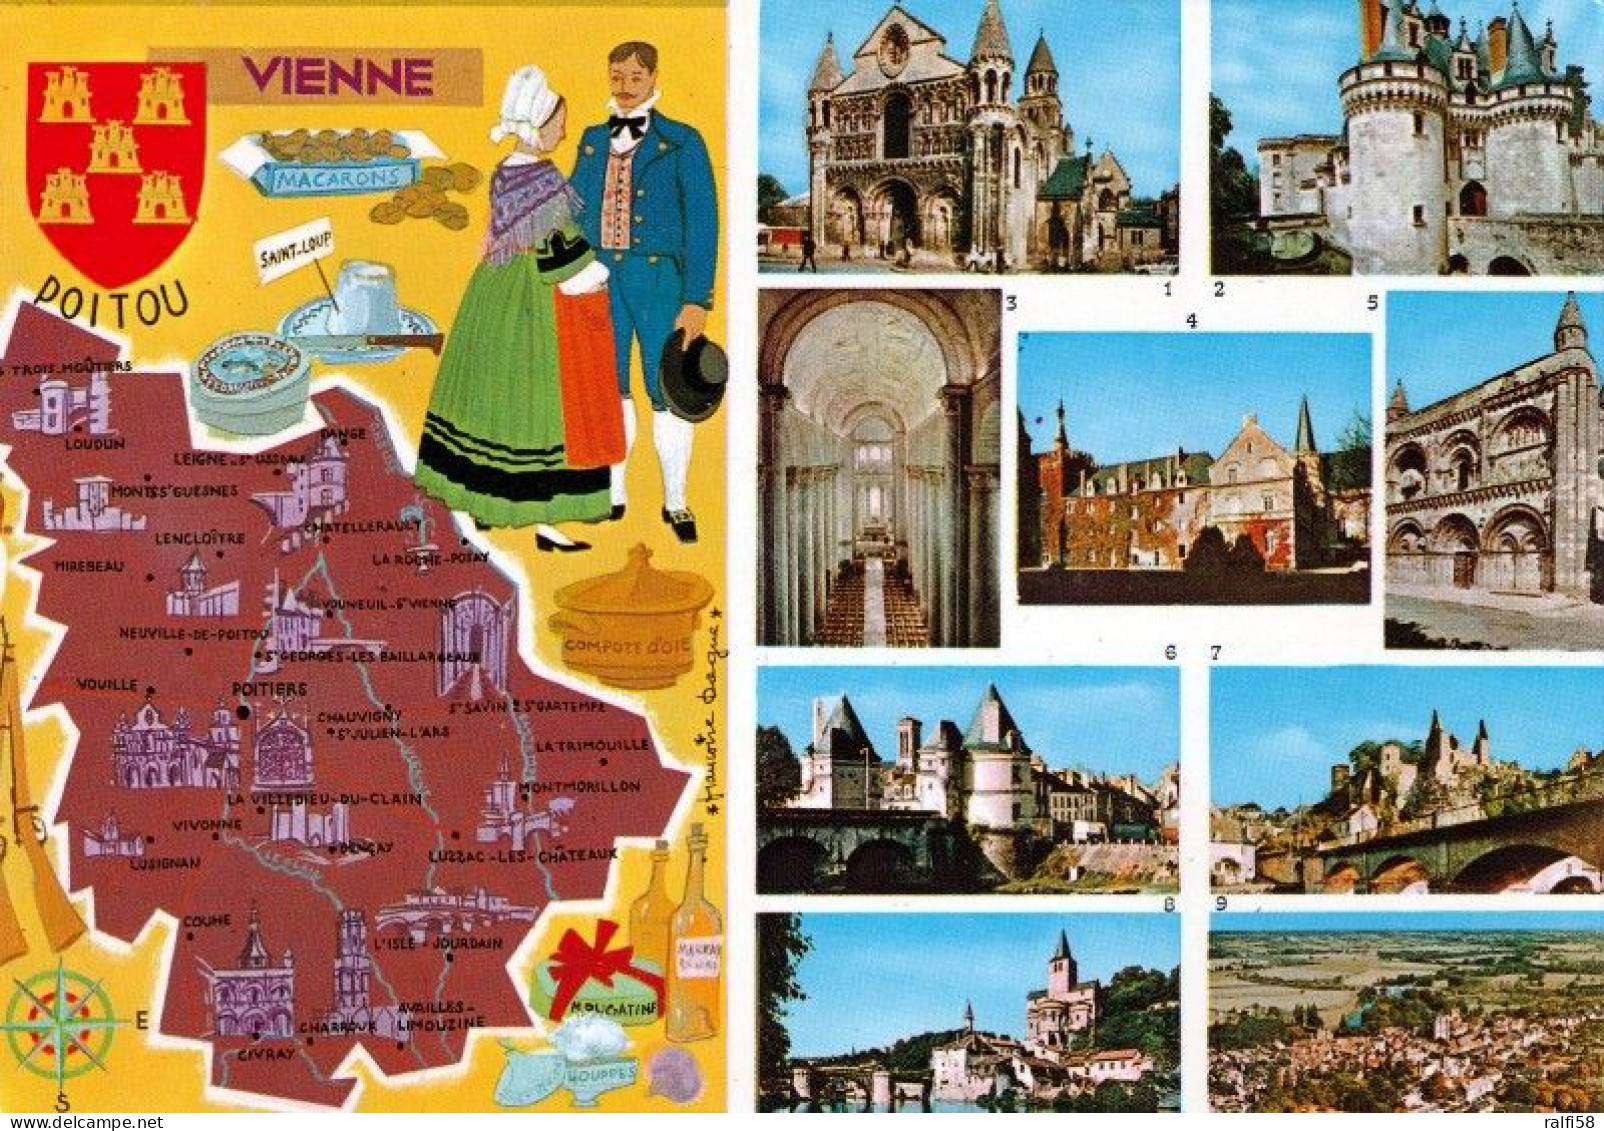 1 Map Of France * 1 Ansichtskarte Mit Der Landkarte - Département Vienne - Ordnungsnummer 86 * - Cartes Géographiques